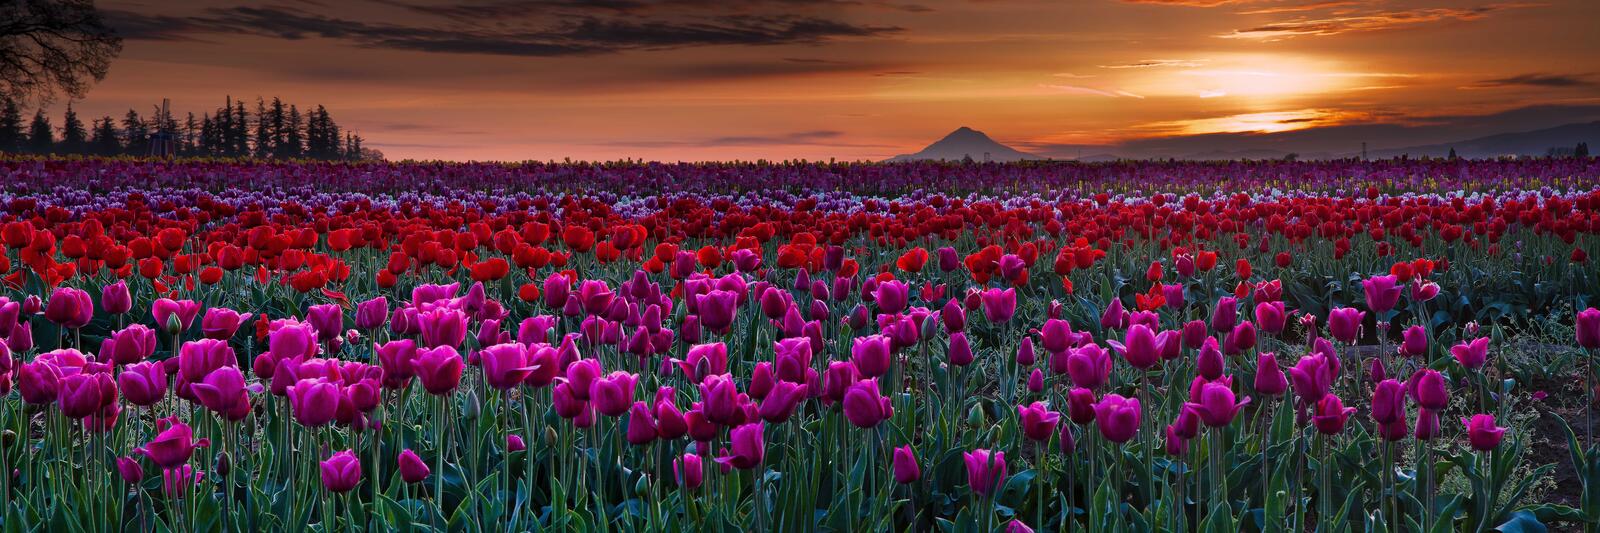 Обои поле тюльпанов закат солнца поле на рабочий стол